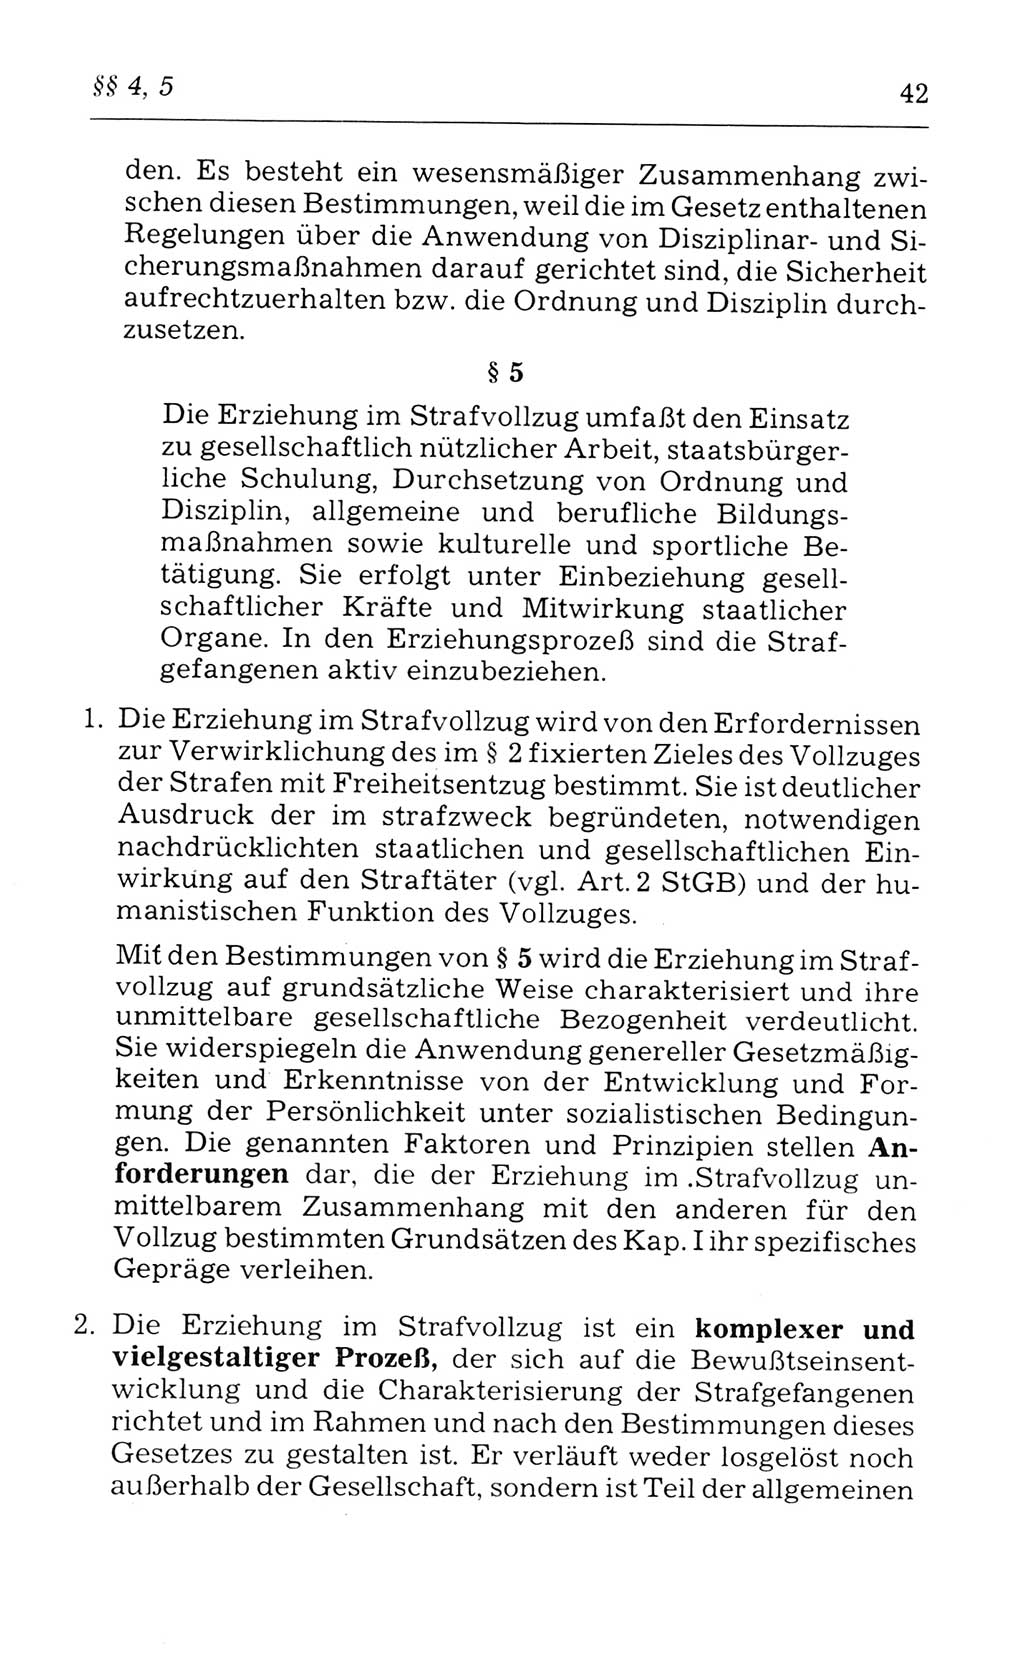 Kommentar zum Strafvollzugsgesetz [(StVG) Deutsche Demokratische Republik (DDR)] 1980, Seite 42 (Komm. StVG DDR 1980, S. 42)